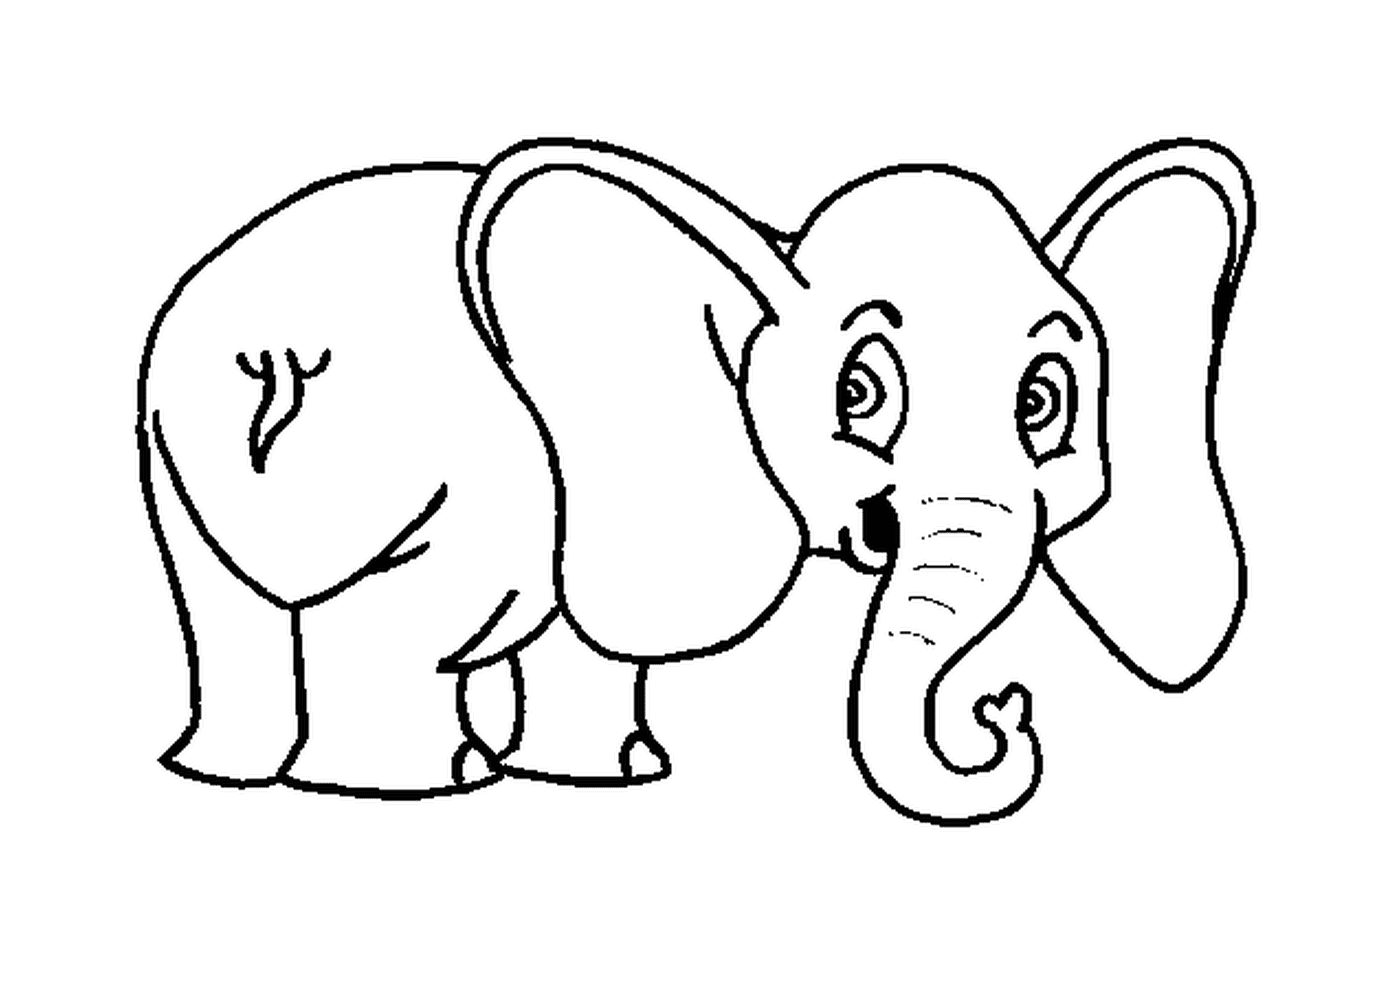  हाथी बड़े कान से बँधा हुआ होता है 